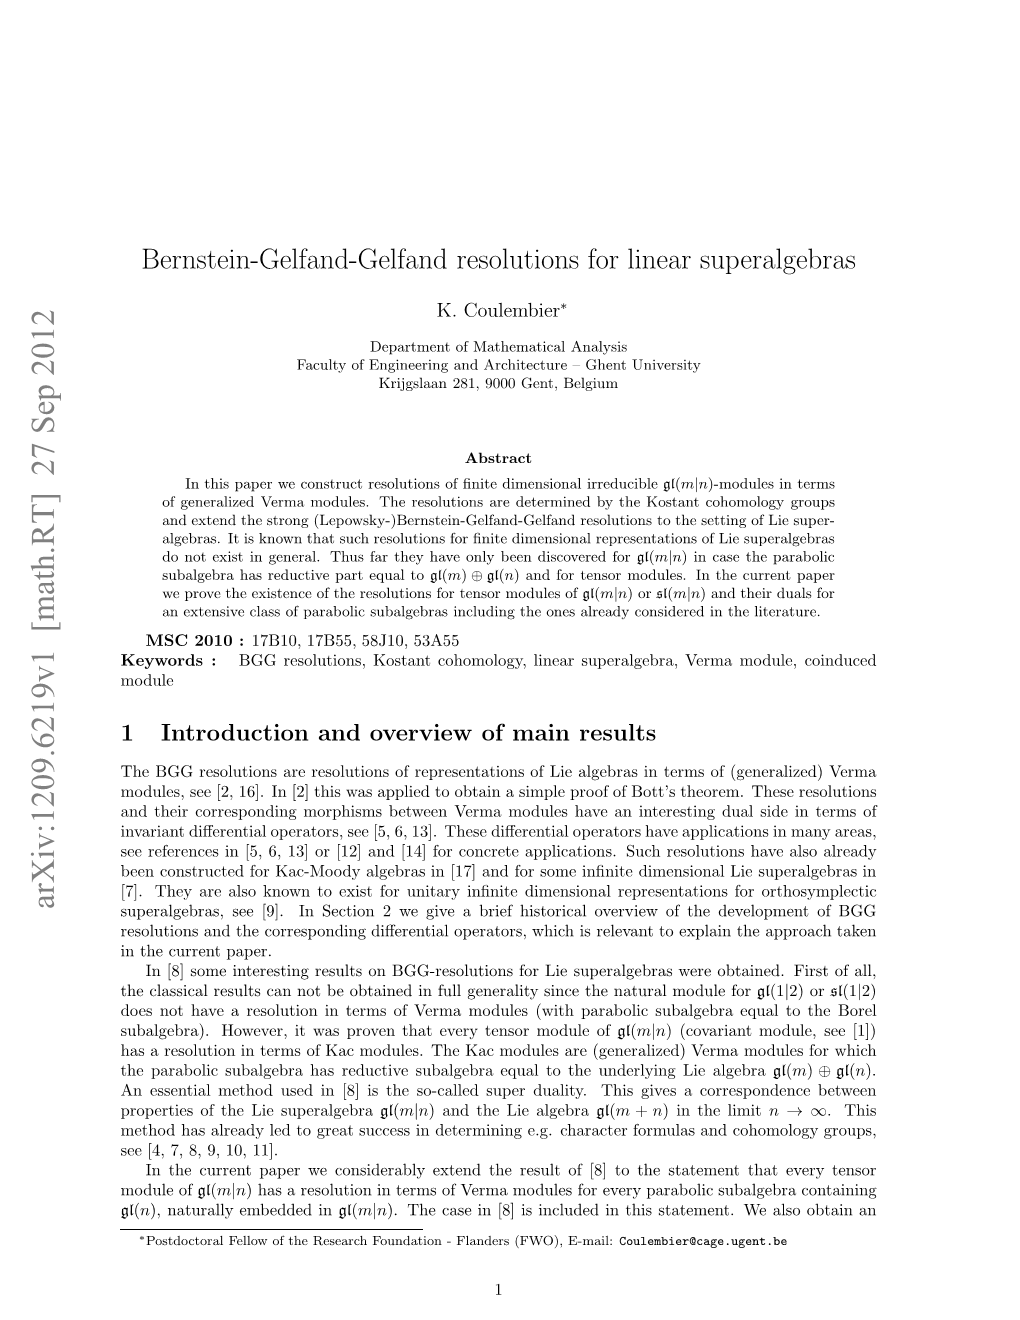 Bernstein-Gelfand-Gelfand Resolutions for Linear Superalgebras